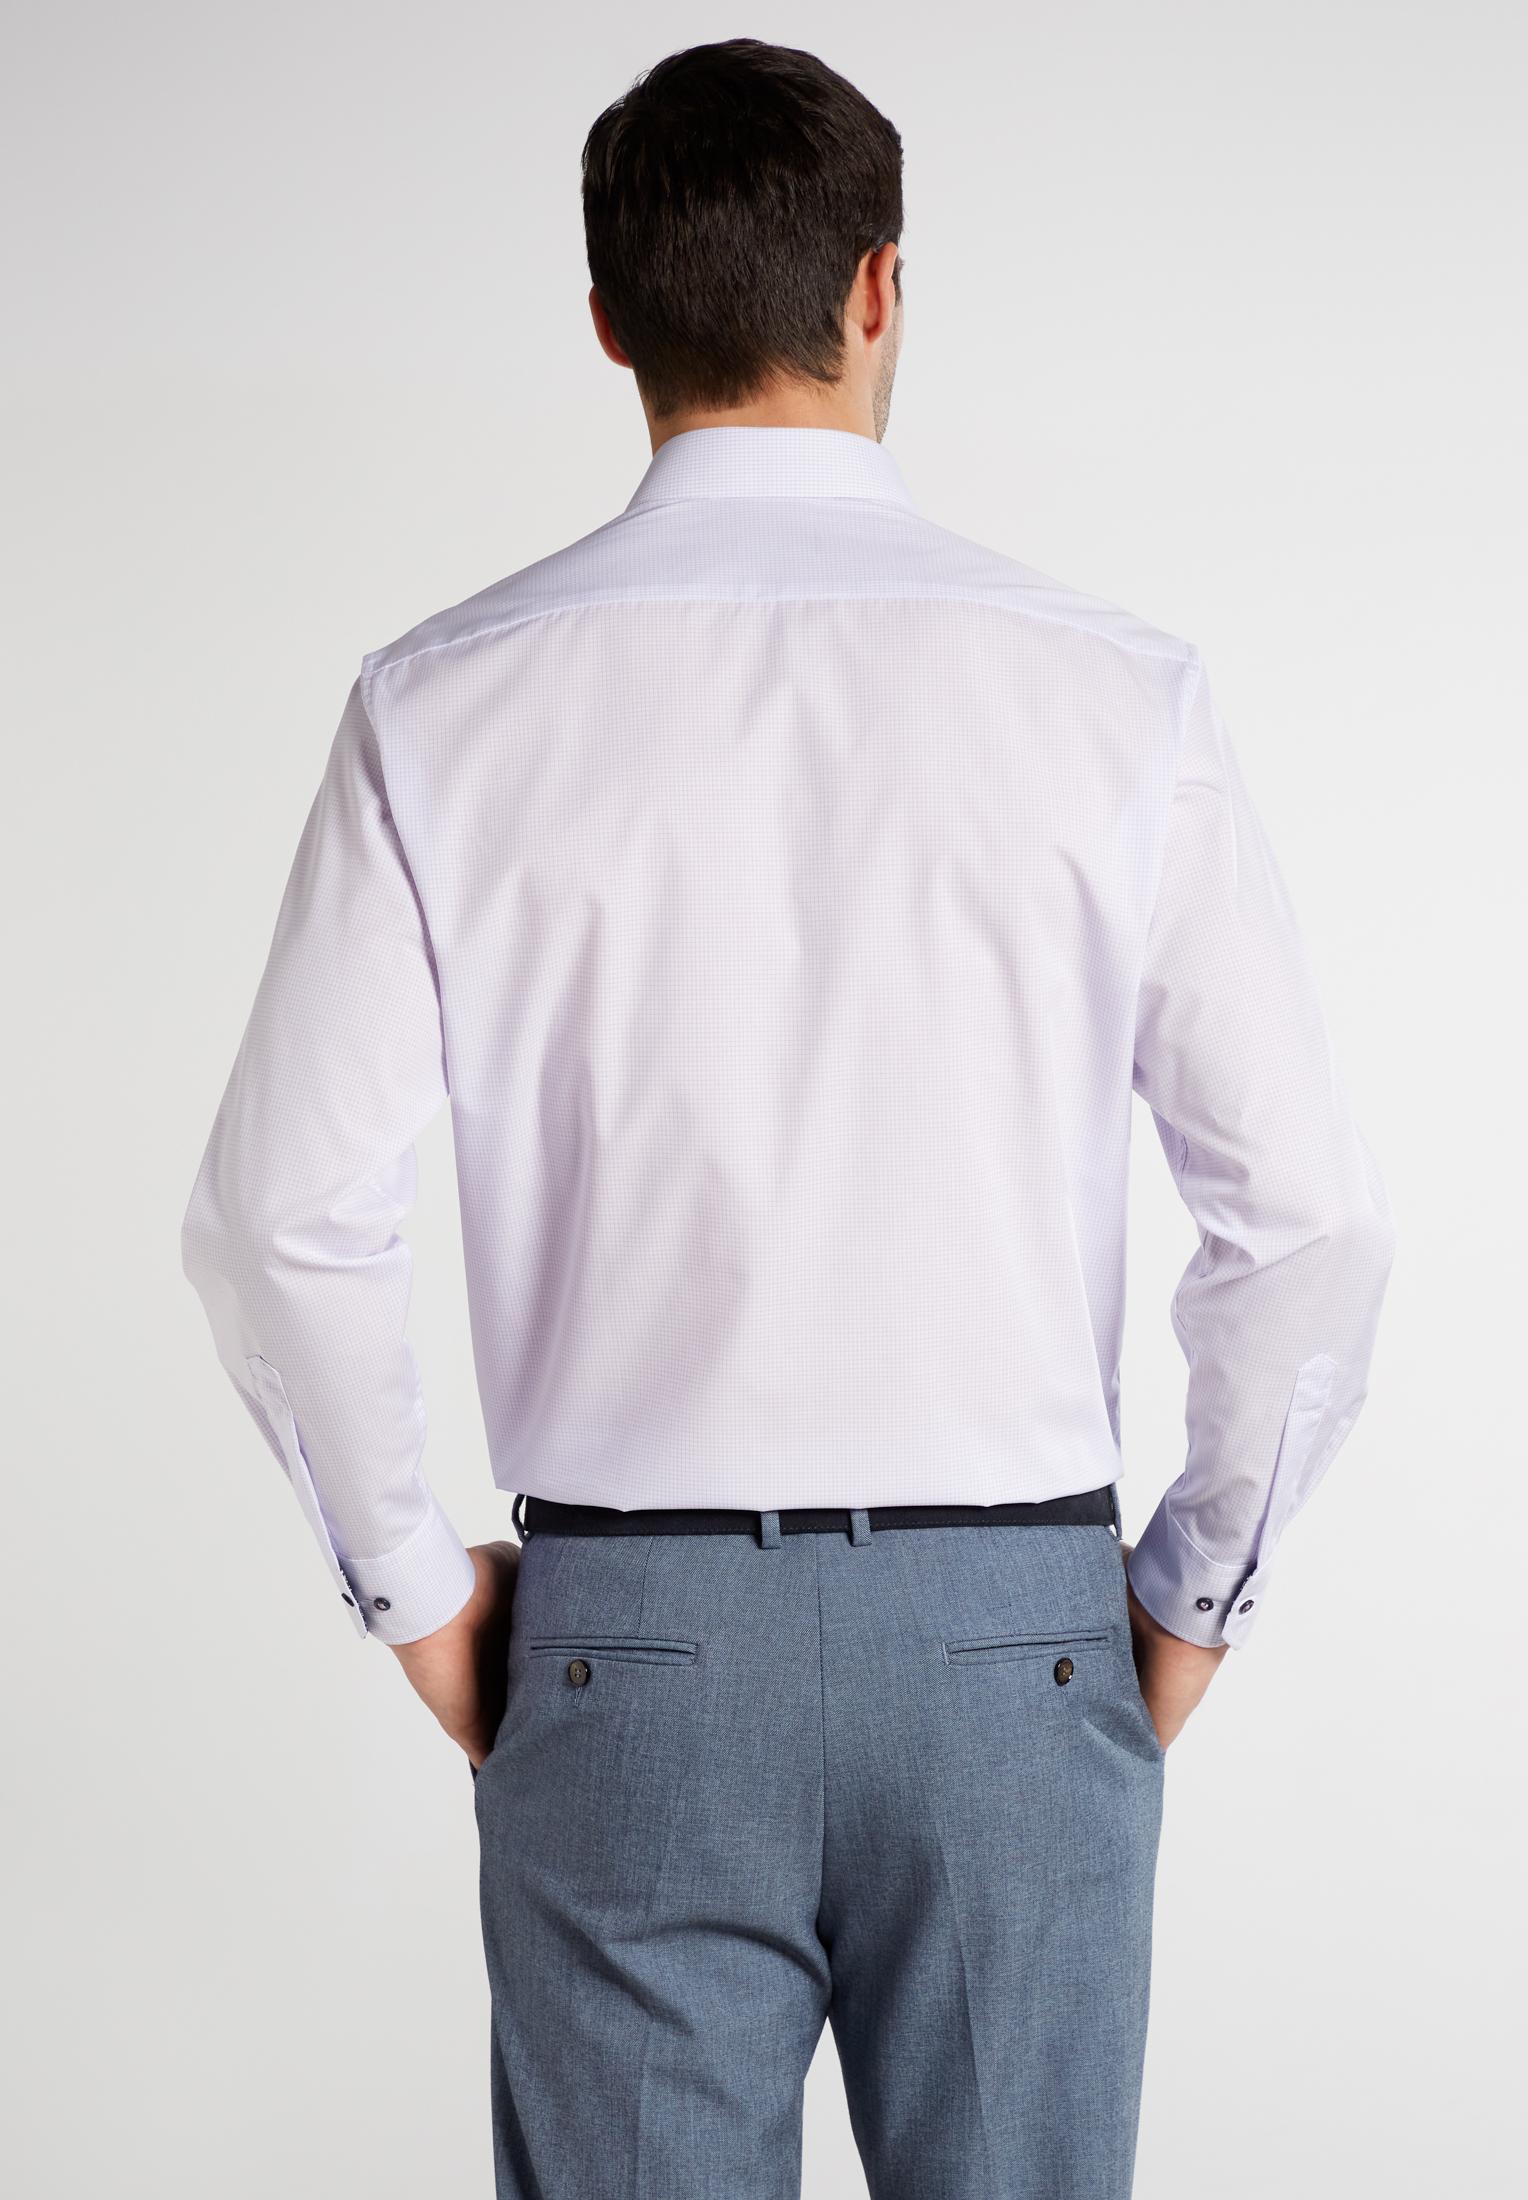 Мужская рубашка ETERNA, белая, цвет белый, размер 46 - фото 3